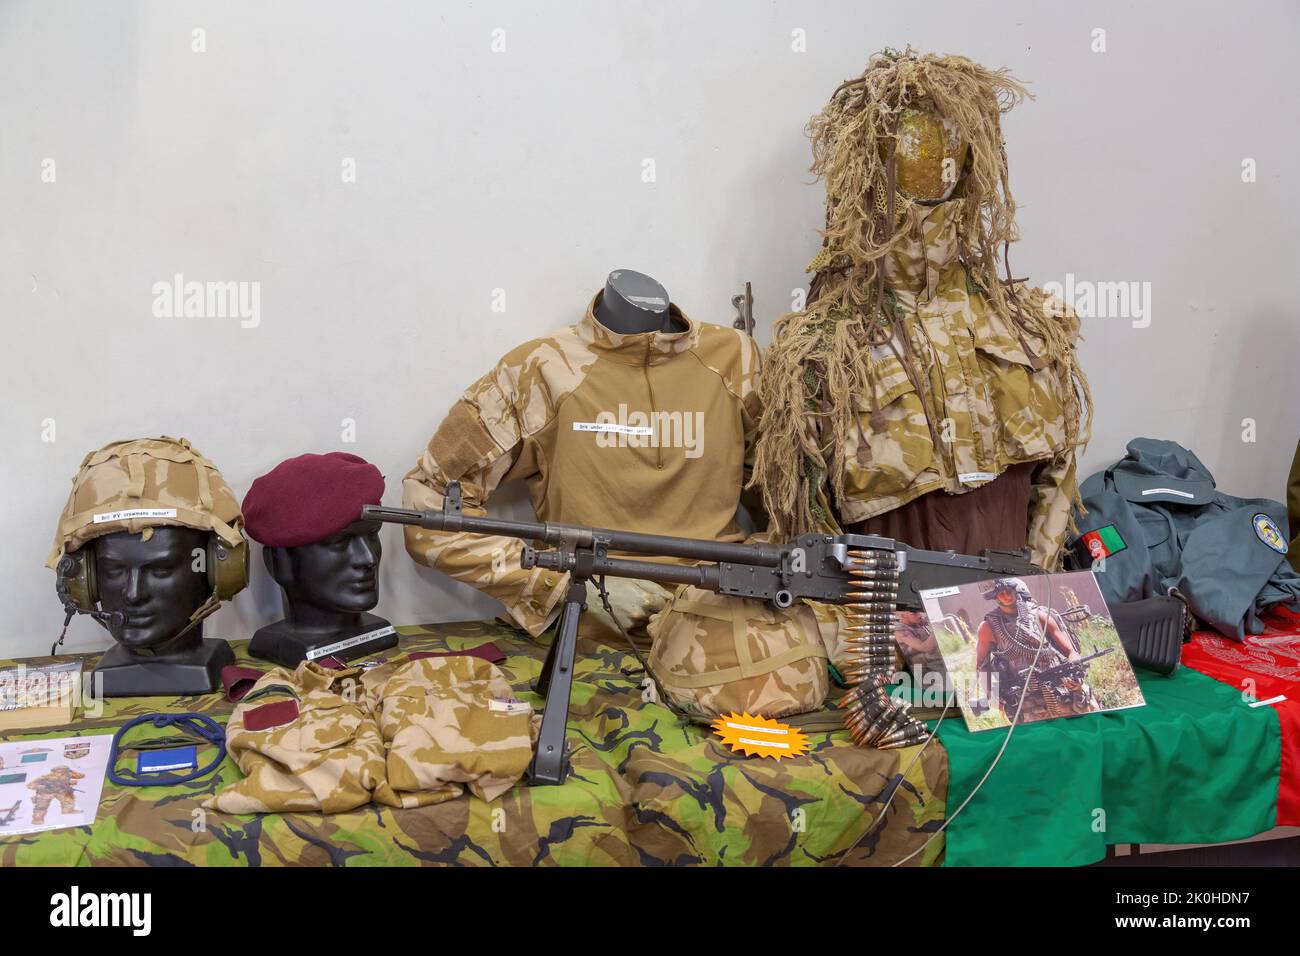 Una mostra di armi, armature da corpo e mimetizzazione usate dall'esercito britannico in Afghanistan, in mostra ad uno spettacolo di armi e militarismo Foto Stock